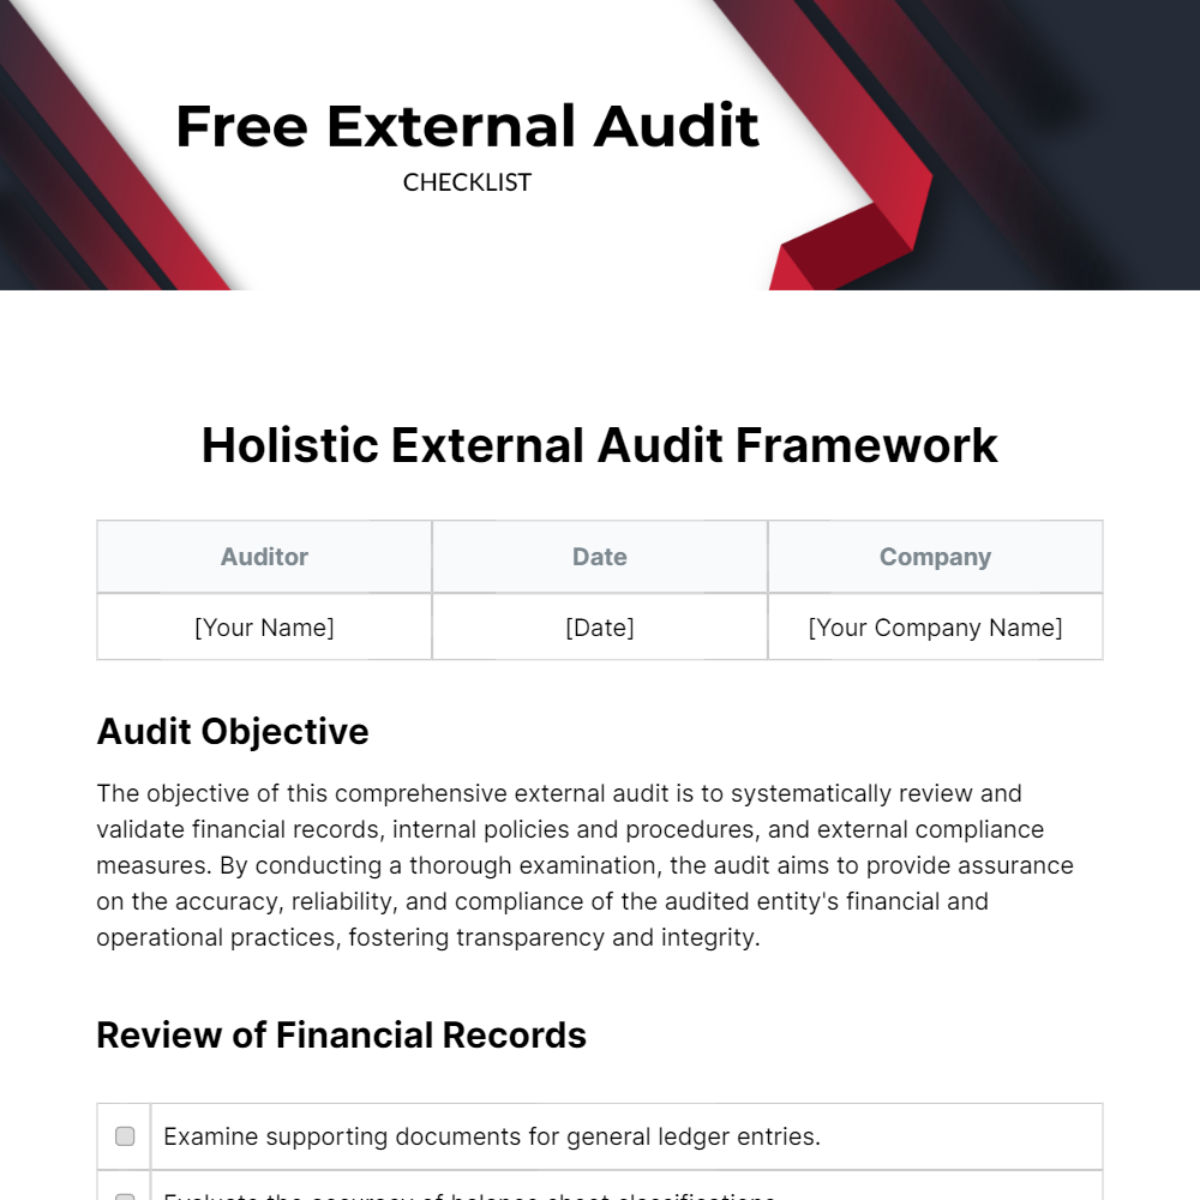 Free External Audit Checklist Template